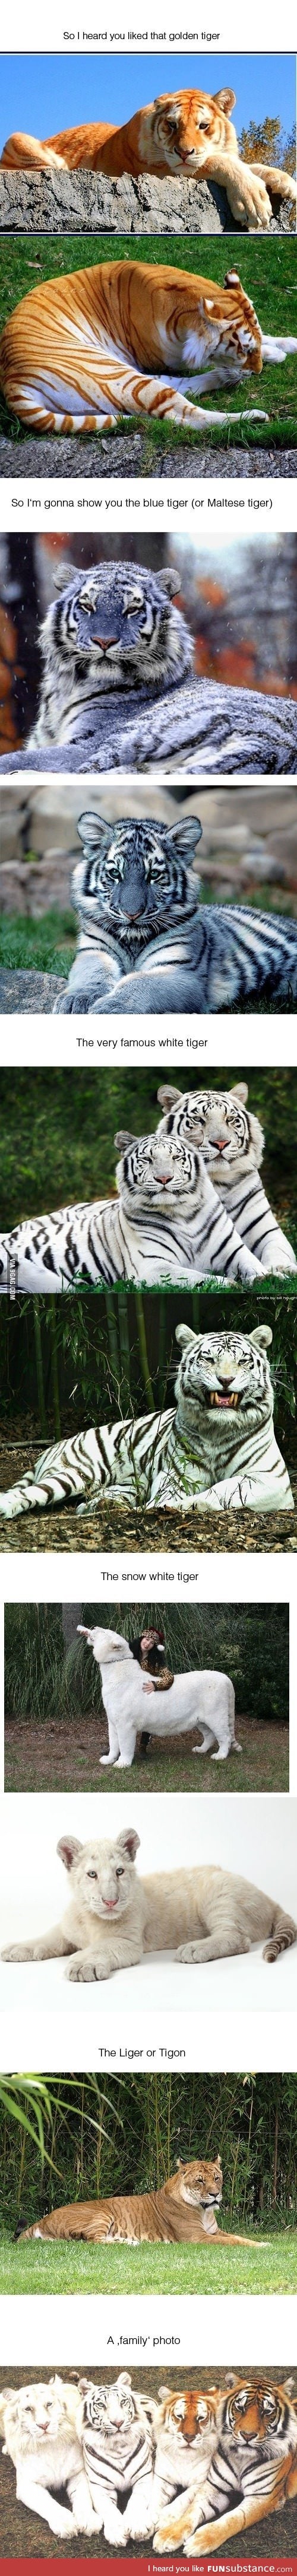 Tiger types